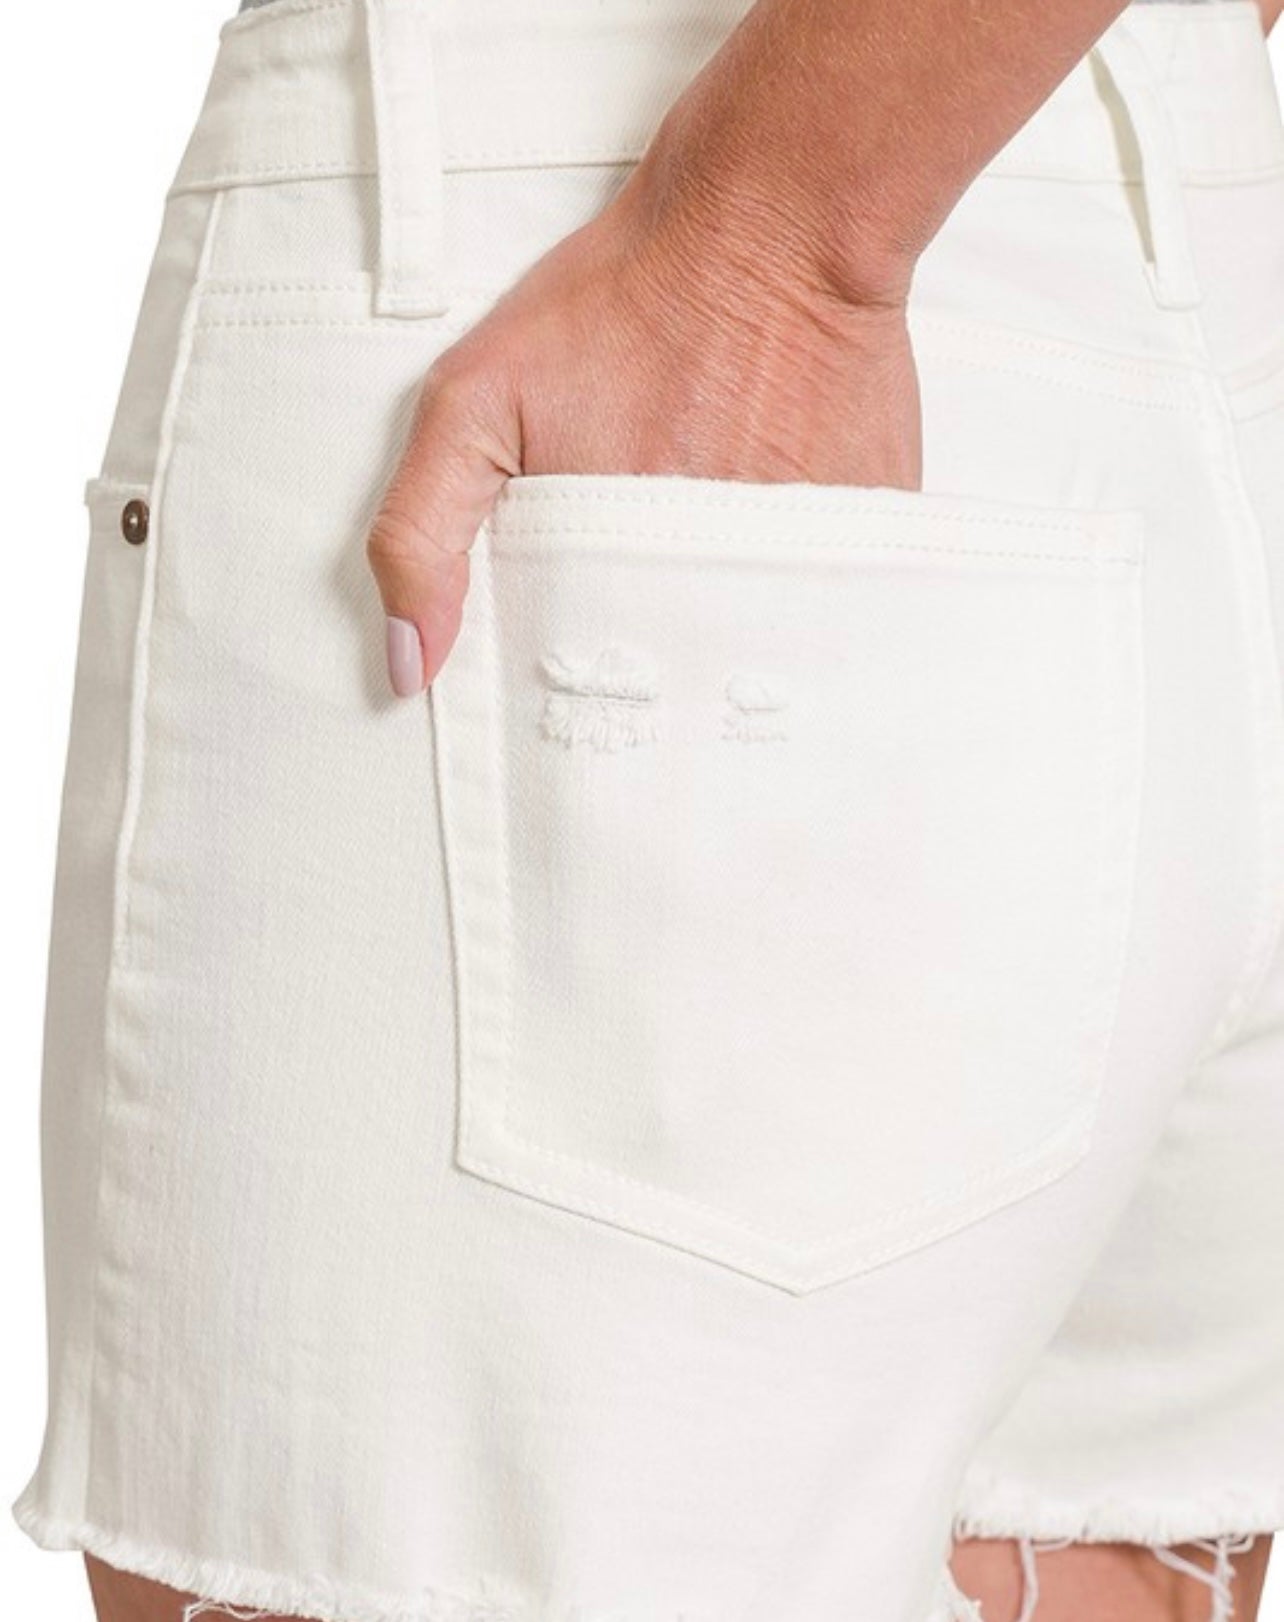 Button Fly Raw Hem White Denim Shorts